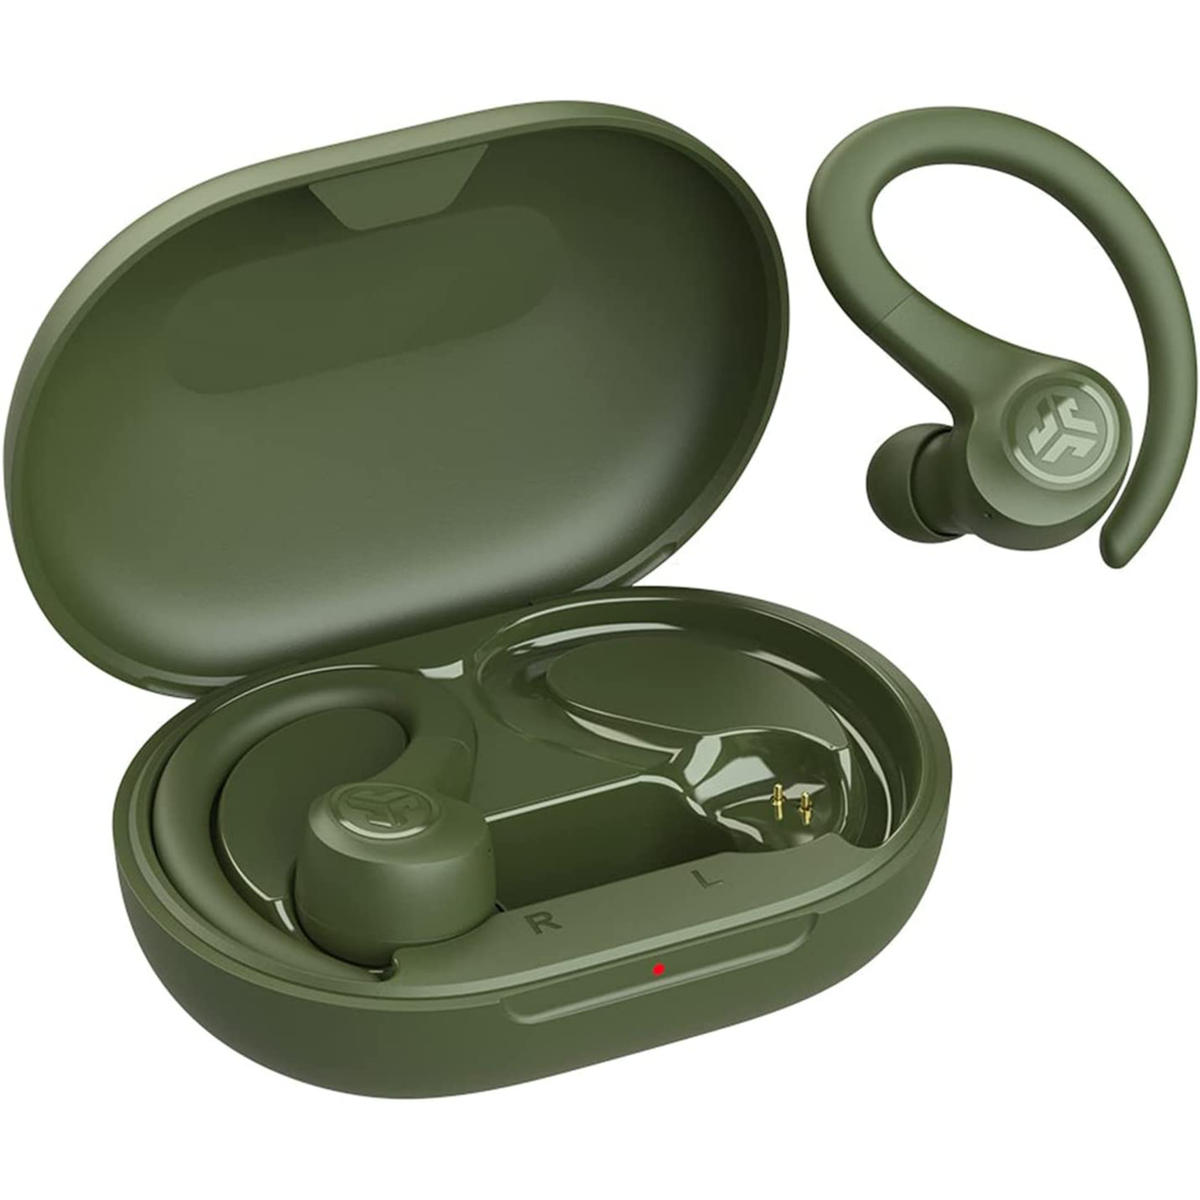 Jlab GoAirSport In-Ear Wireless Earbuds, Green